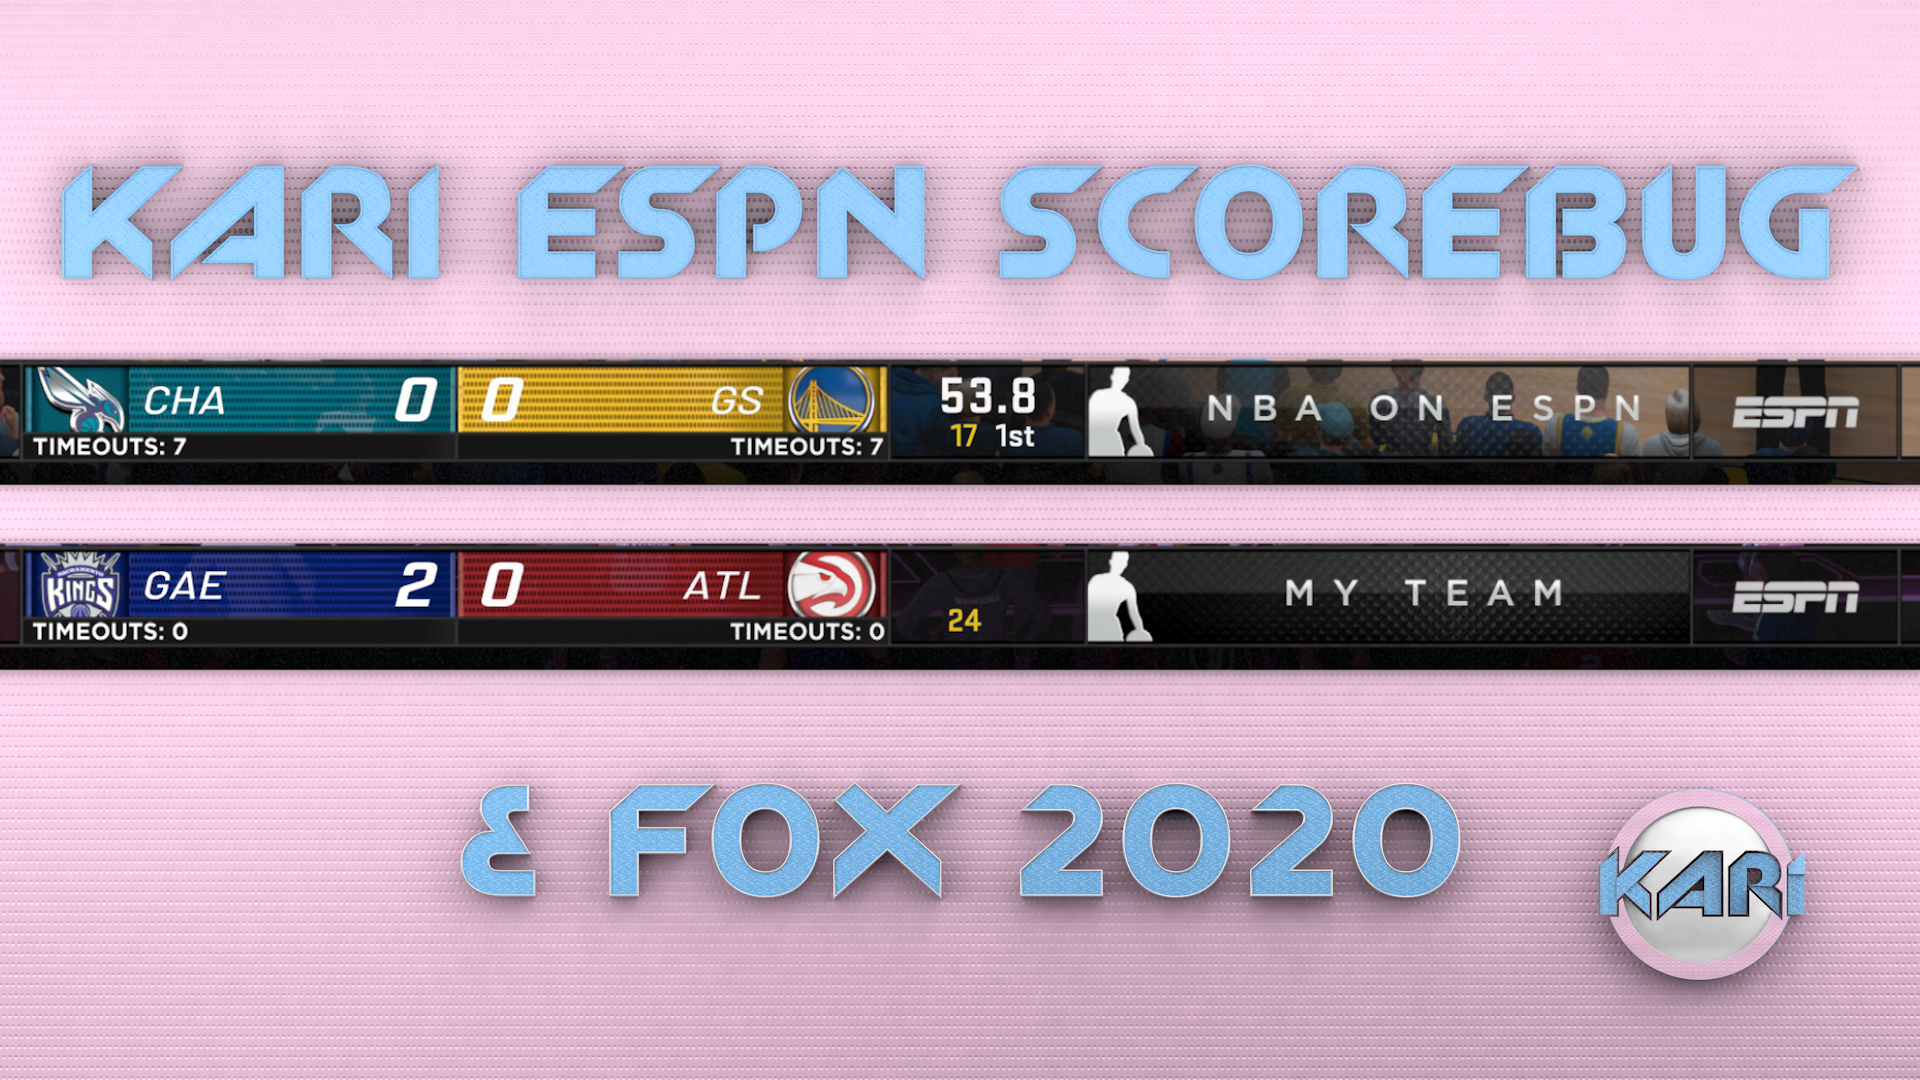 Fox 2020. NBA Scoreboard. ТНТ Голд 2020. Ultra Scoreboards. NBA Scoreboard PNG.